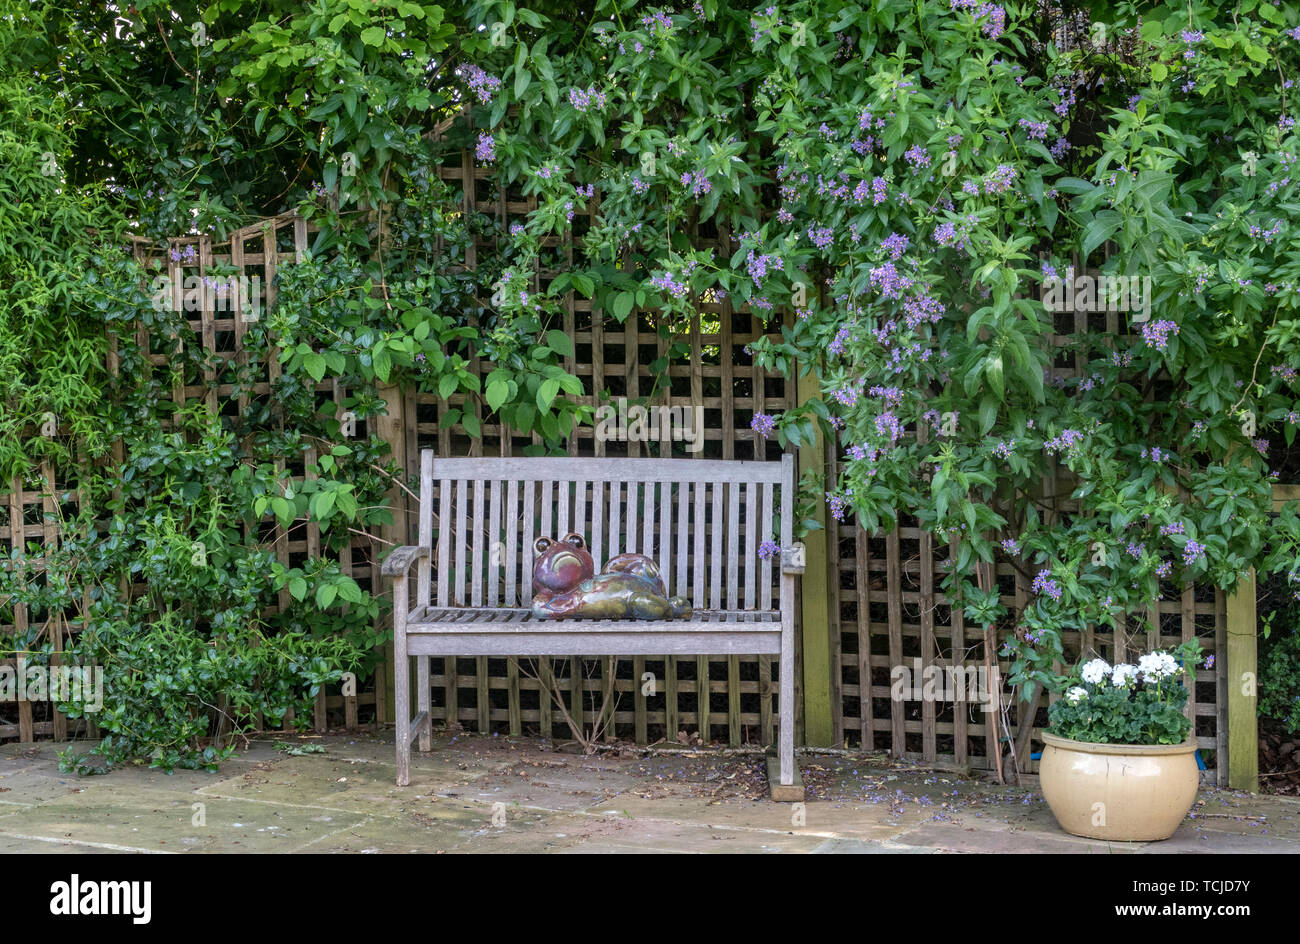 Un ceramiche la figura di un rospo sdraiata su una panchina da giardino accanto a un pergolato coperto da Solanum crispum glasnevin,aka solanum crispum autunnale, albero di patate Foto Stock